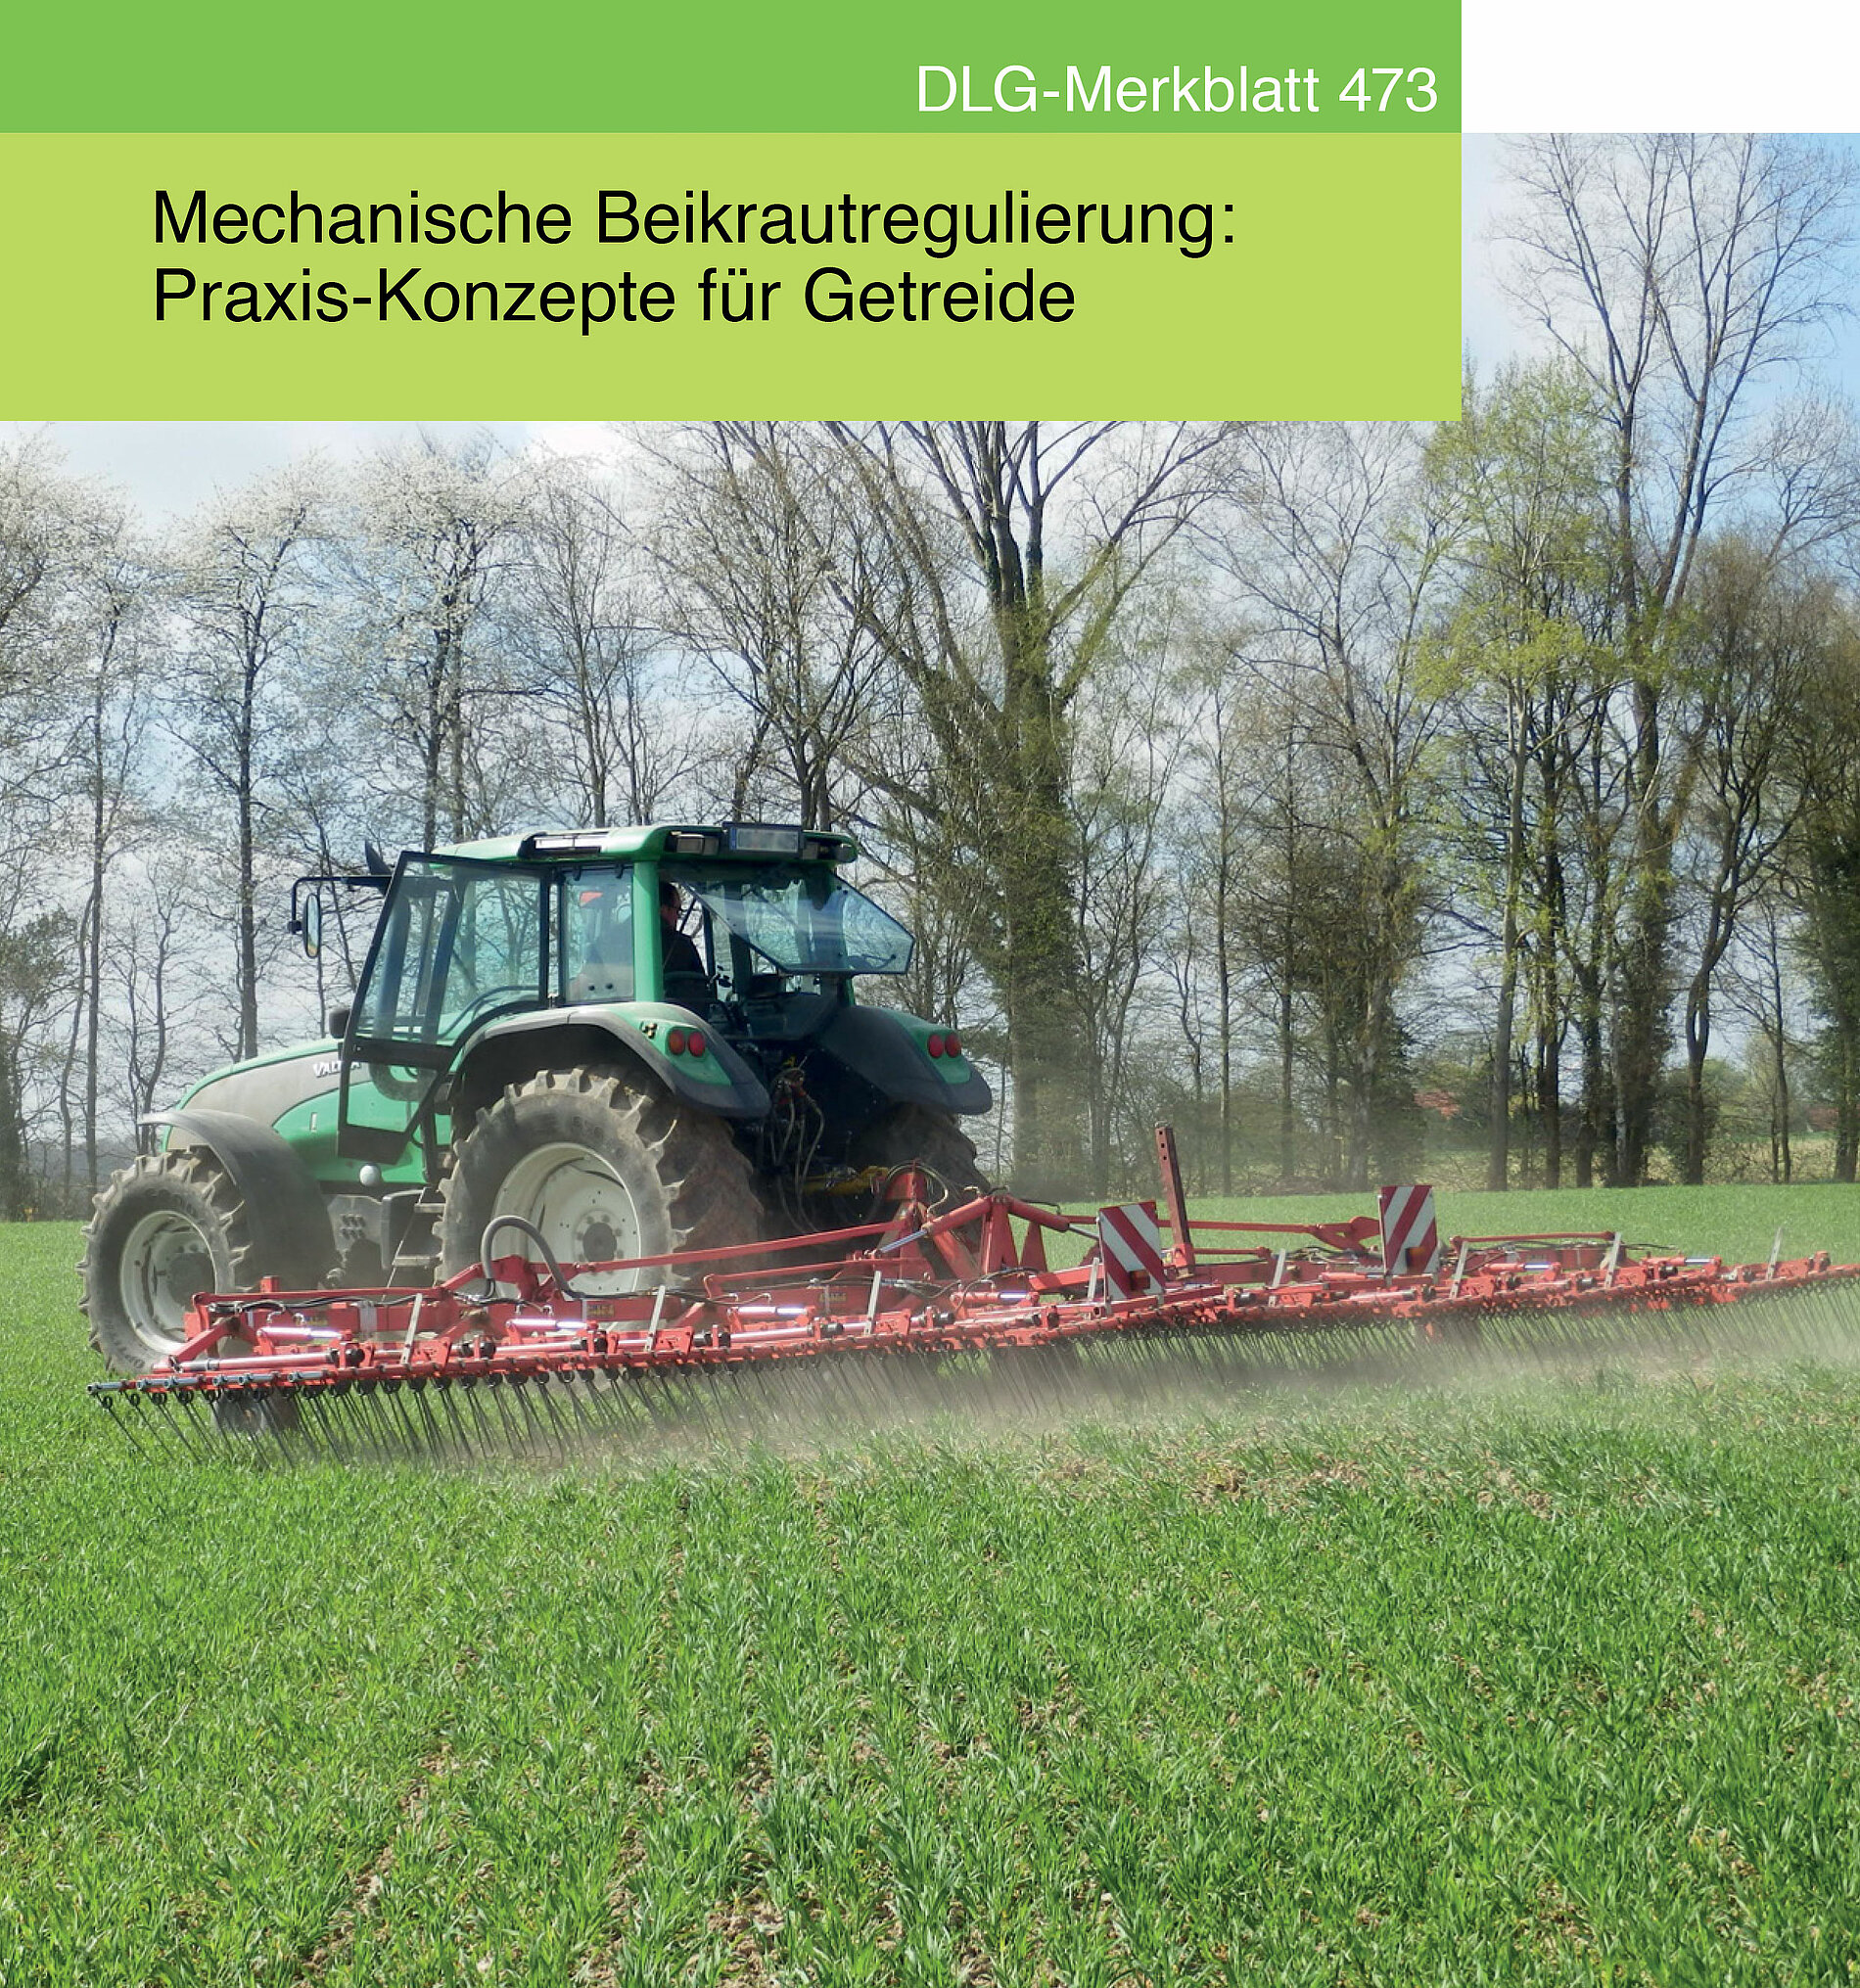 DLG-Merkblatt 473: Mechanische Beikrautregulierung: Praxis-Konzepte für Getreide